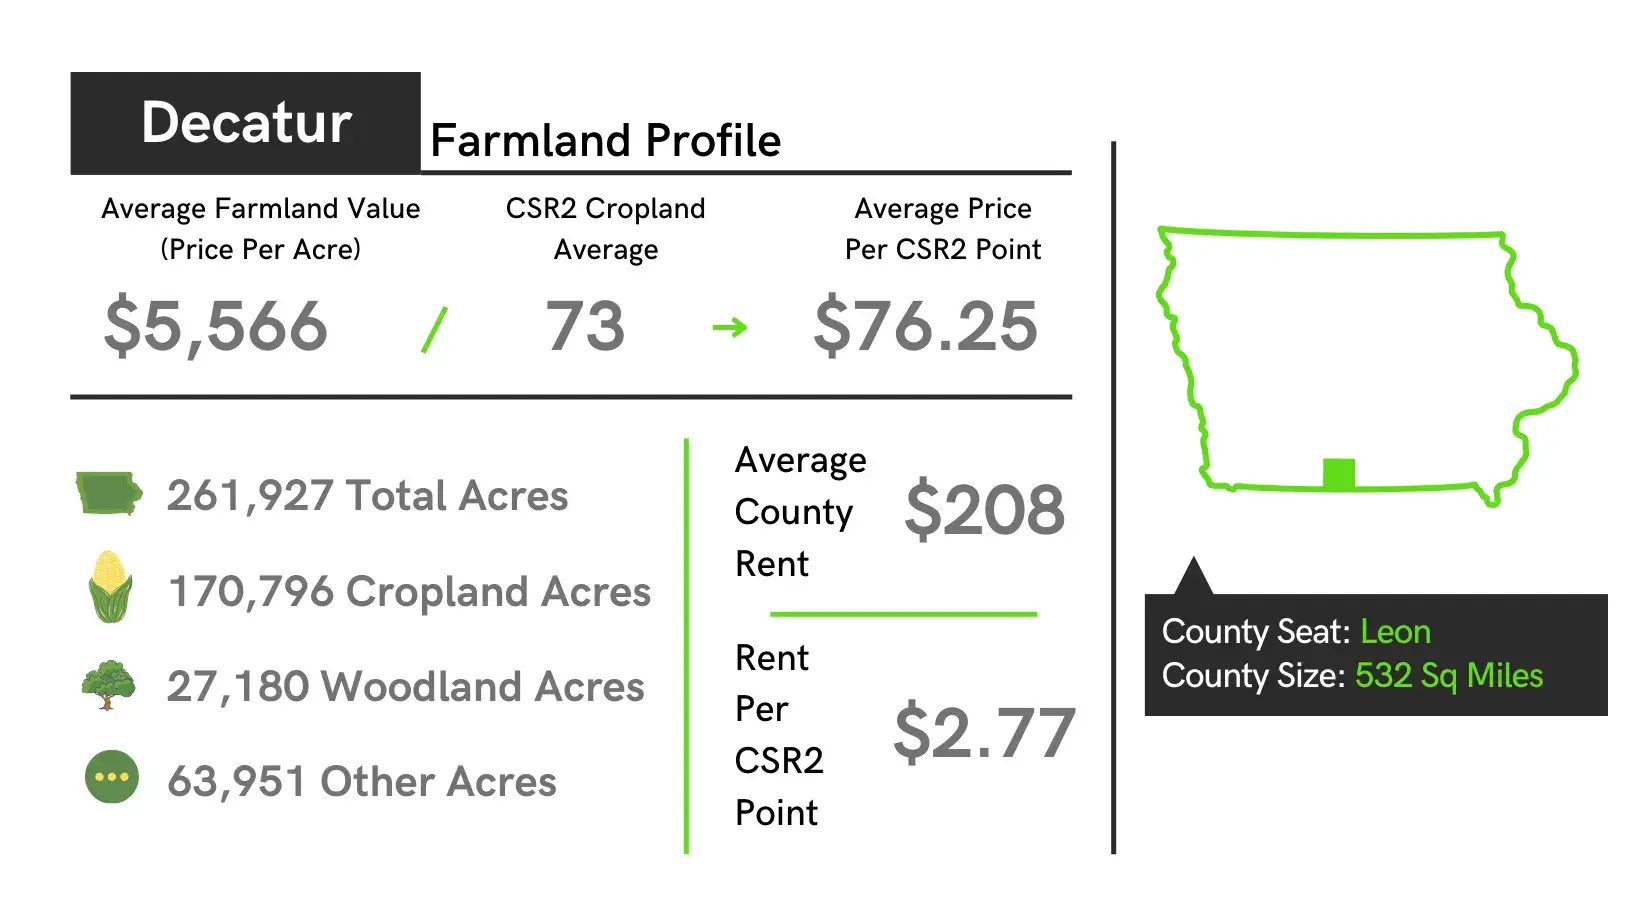 Decatur County Farmland Profile